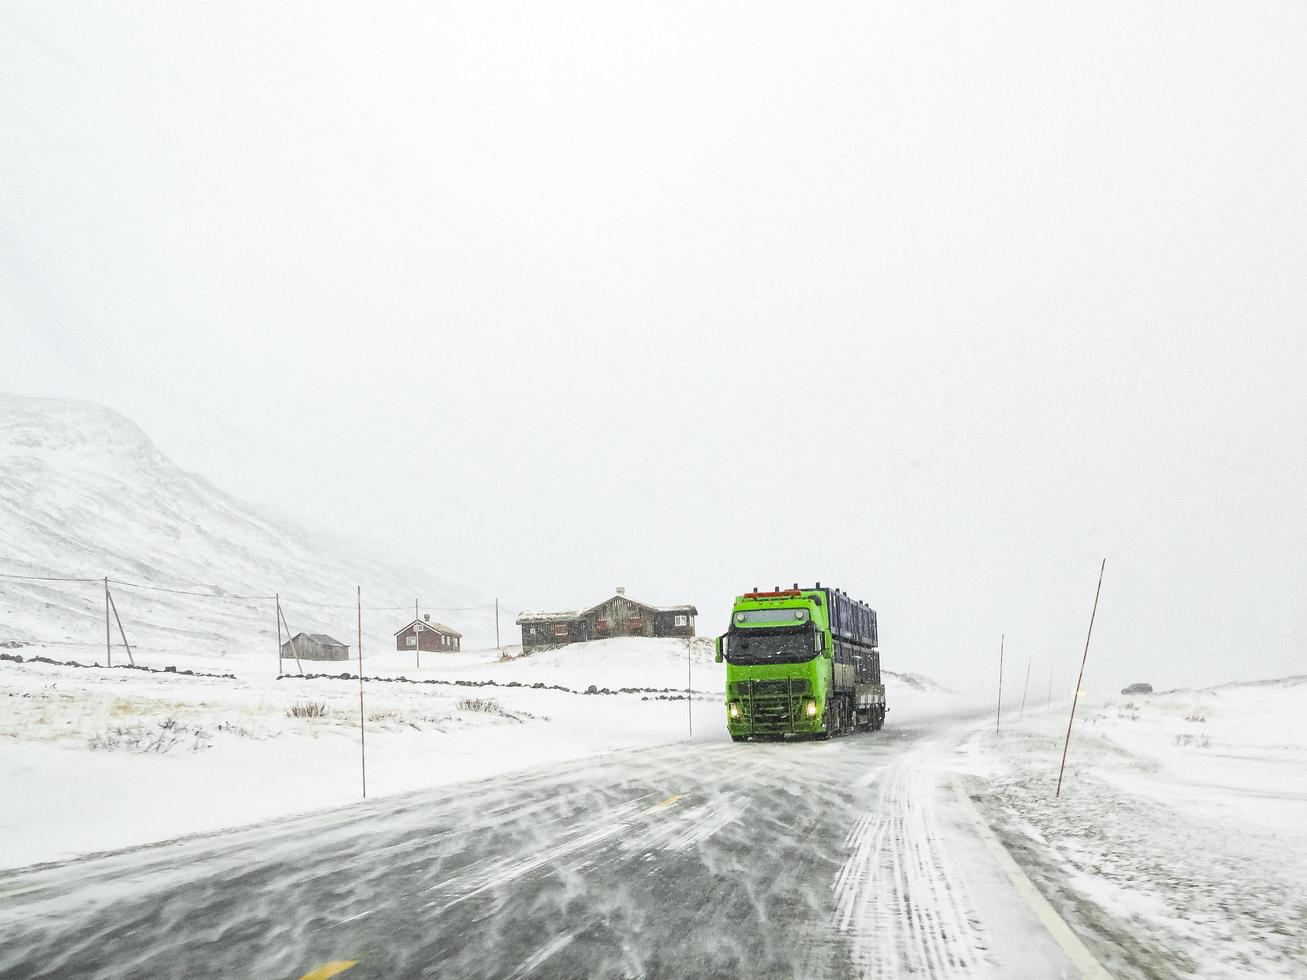 rijden door besneeuwde weg landschap, noorwegen. groene vrachtwagen voor. foto